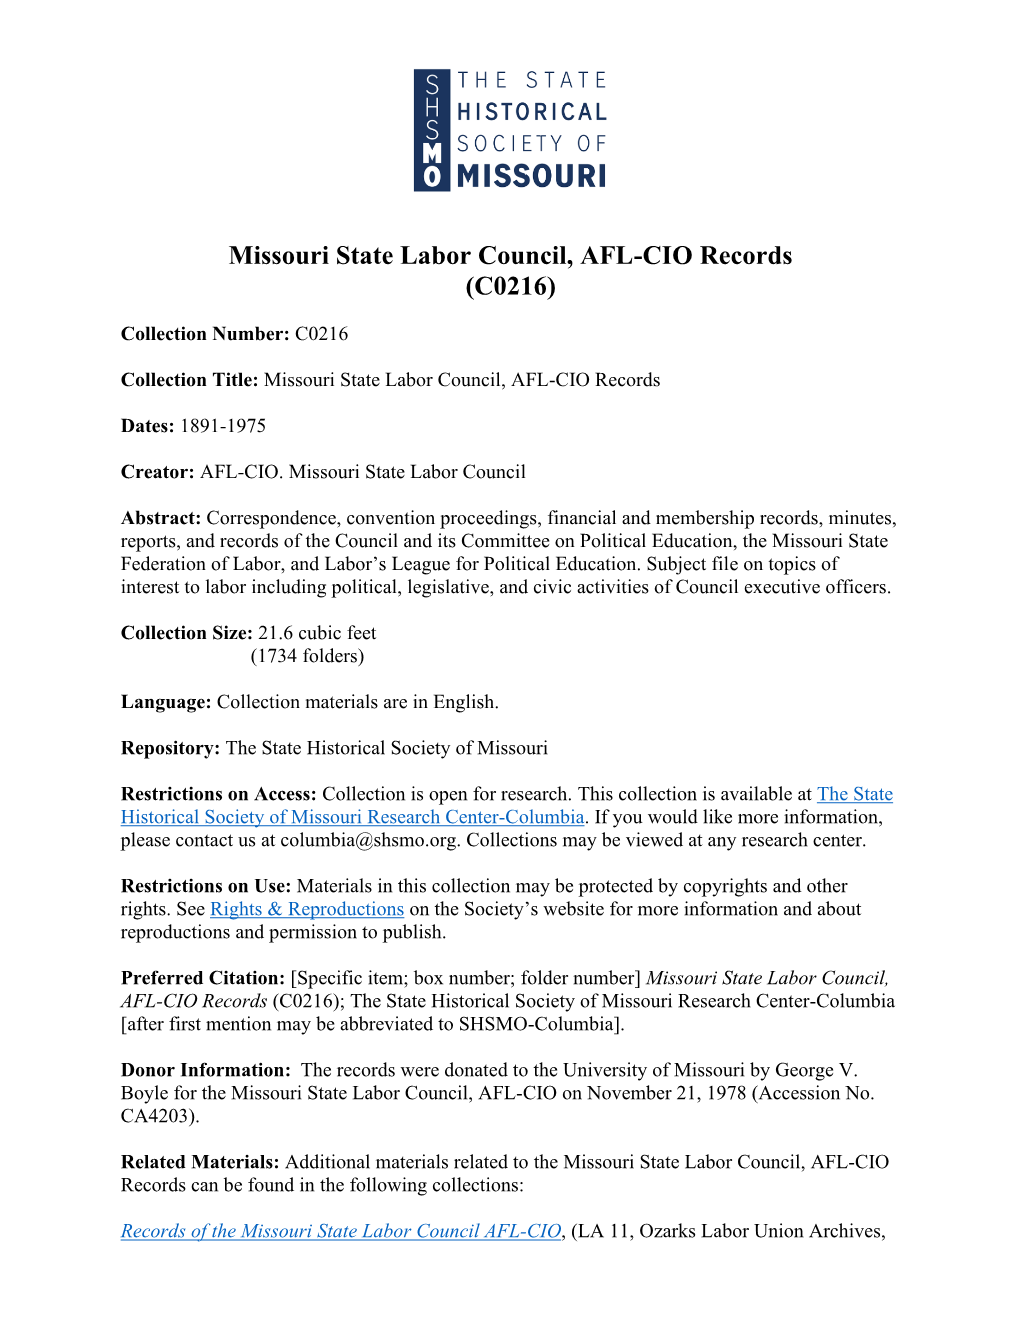 Missouri State Labor Council, AFL-CIO Records (C0216)